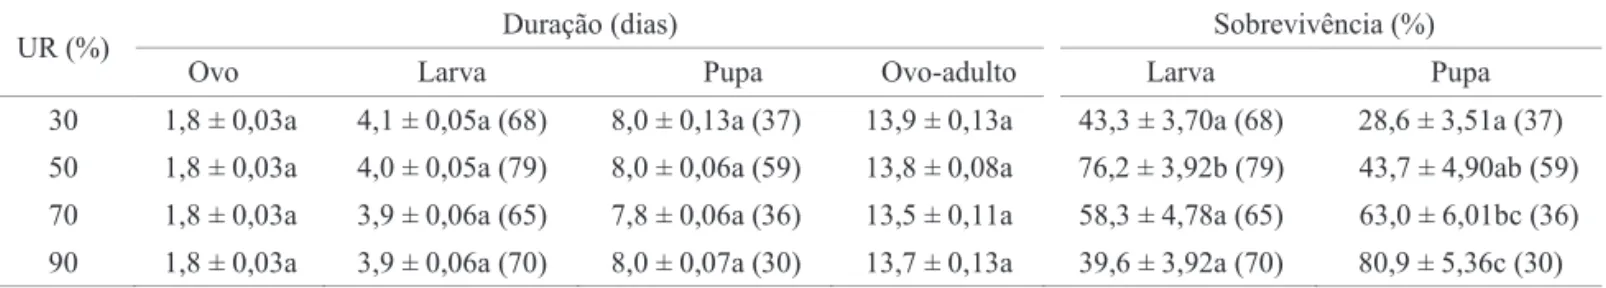 Tabela 3 Duração média (± EP), em dias, das fases de ovo, larva e pupa e do período ovo-adulto e sobrevivência (%) das fases  de larva e pupa de Liriomyza sativae em feijão caupi (Vigna unguiculata), em diferentes UR (30 ± 1°C; fotofase de 14h).